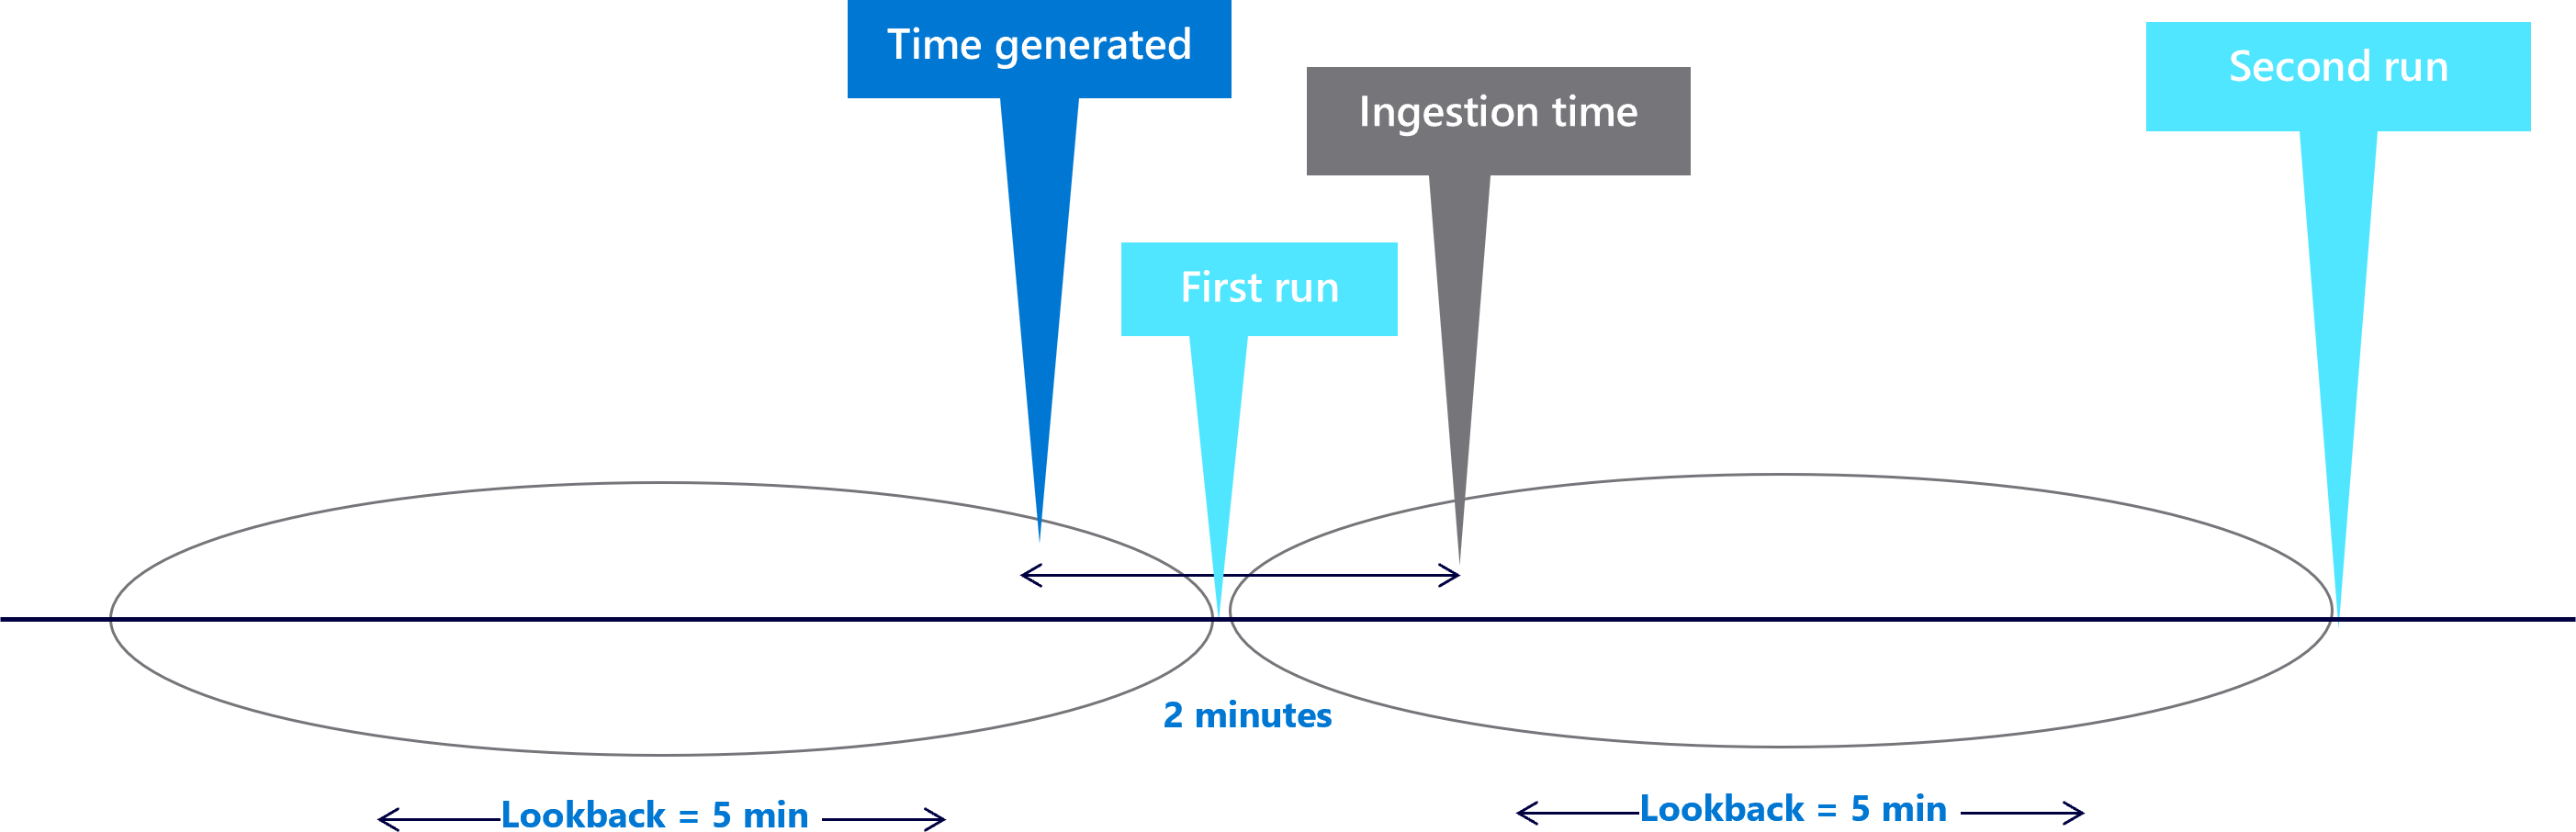 Diagrama que muestra ventanas de cinco minutos atrás con un retraso de dos minutos.